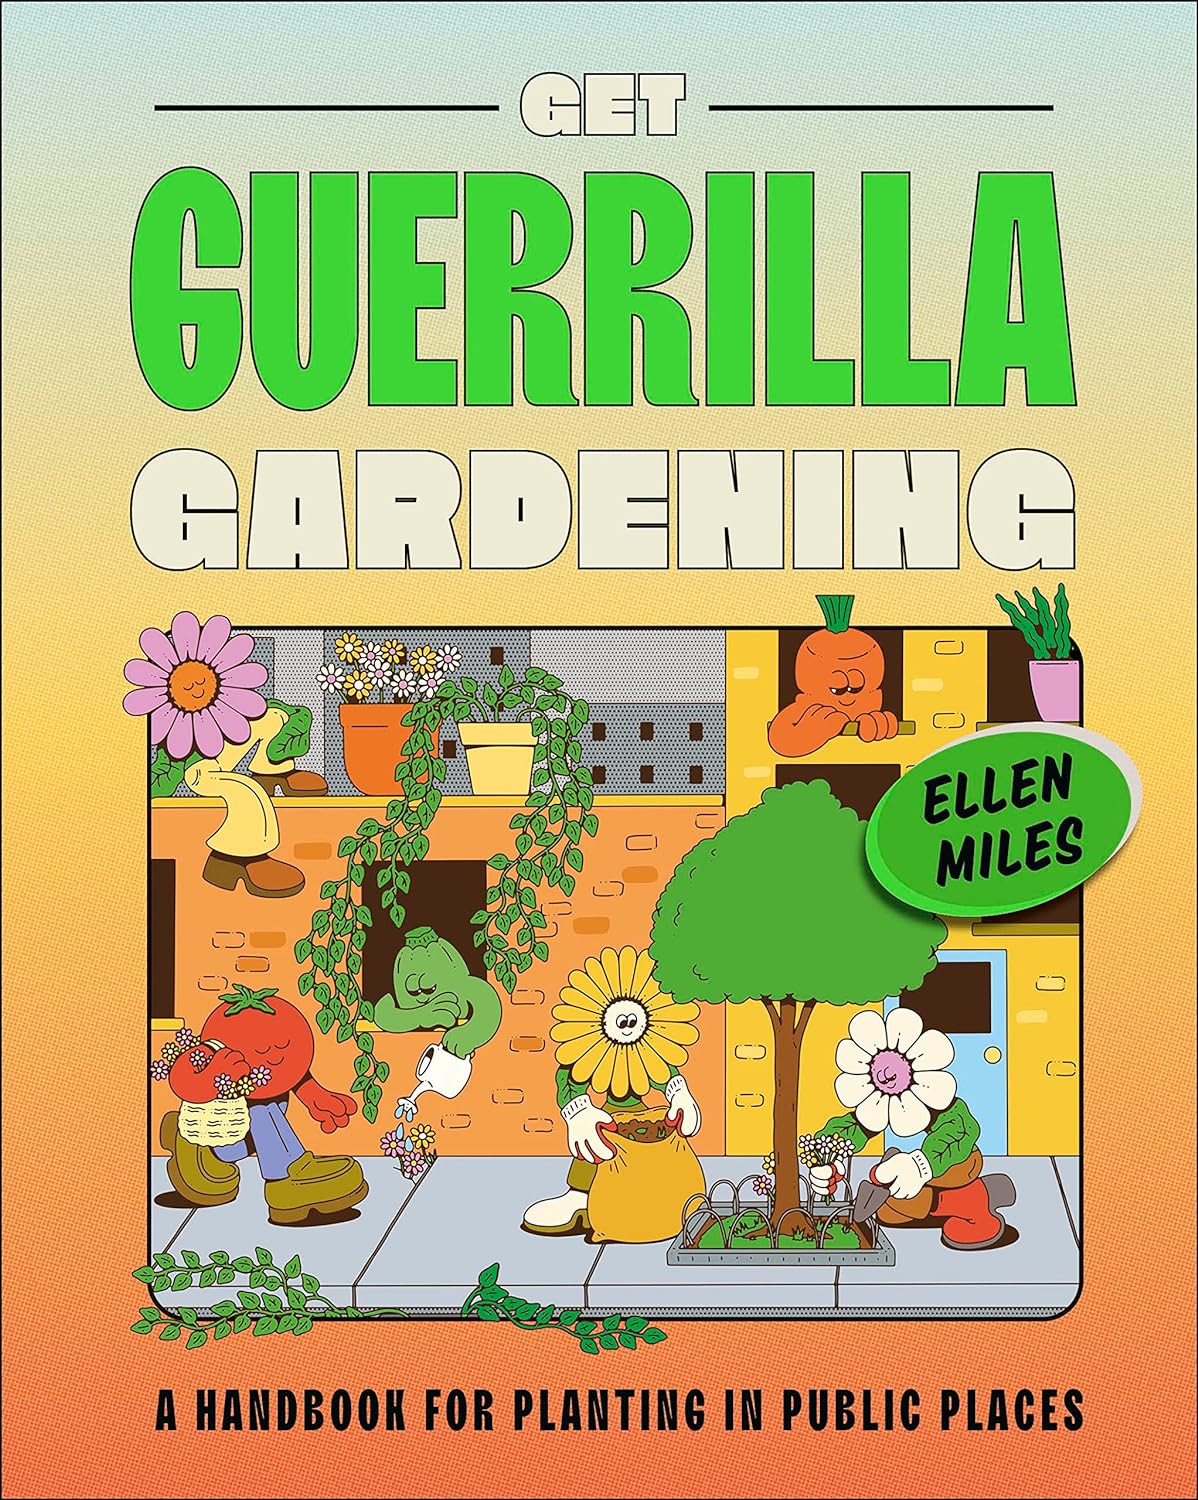 Get guerrilla gardening